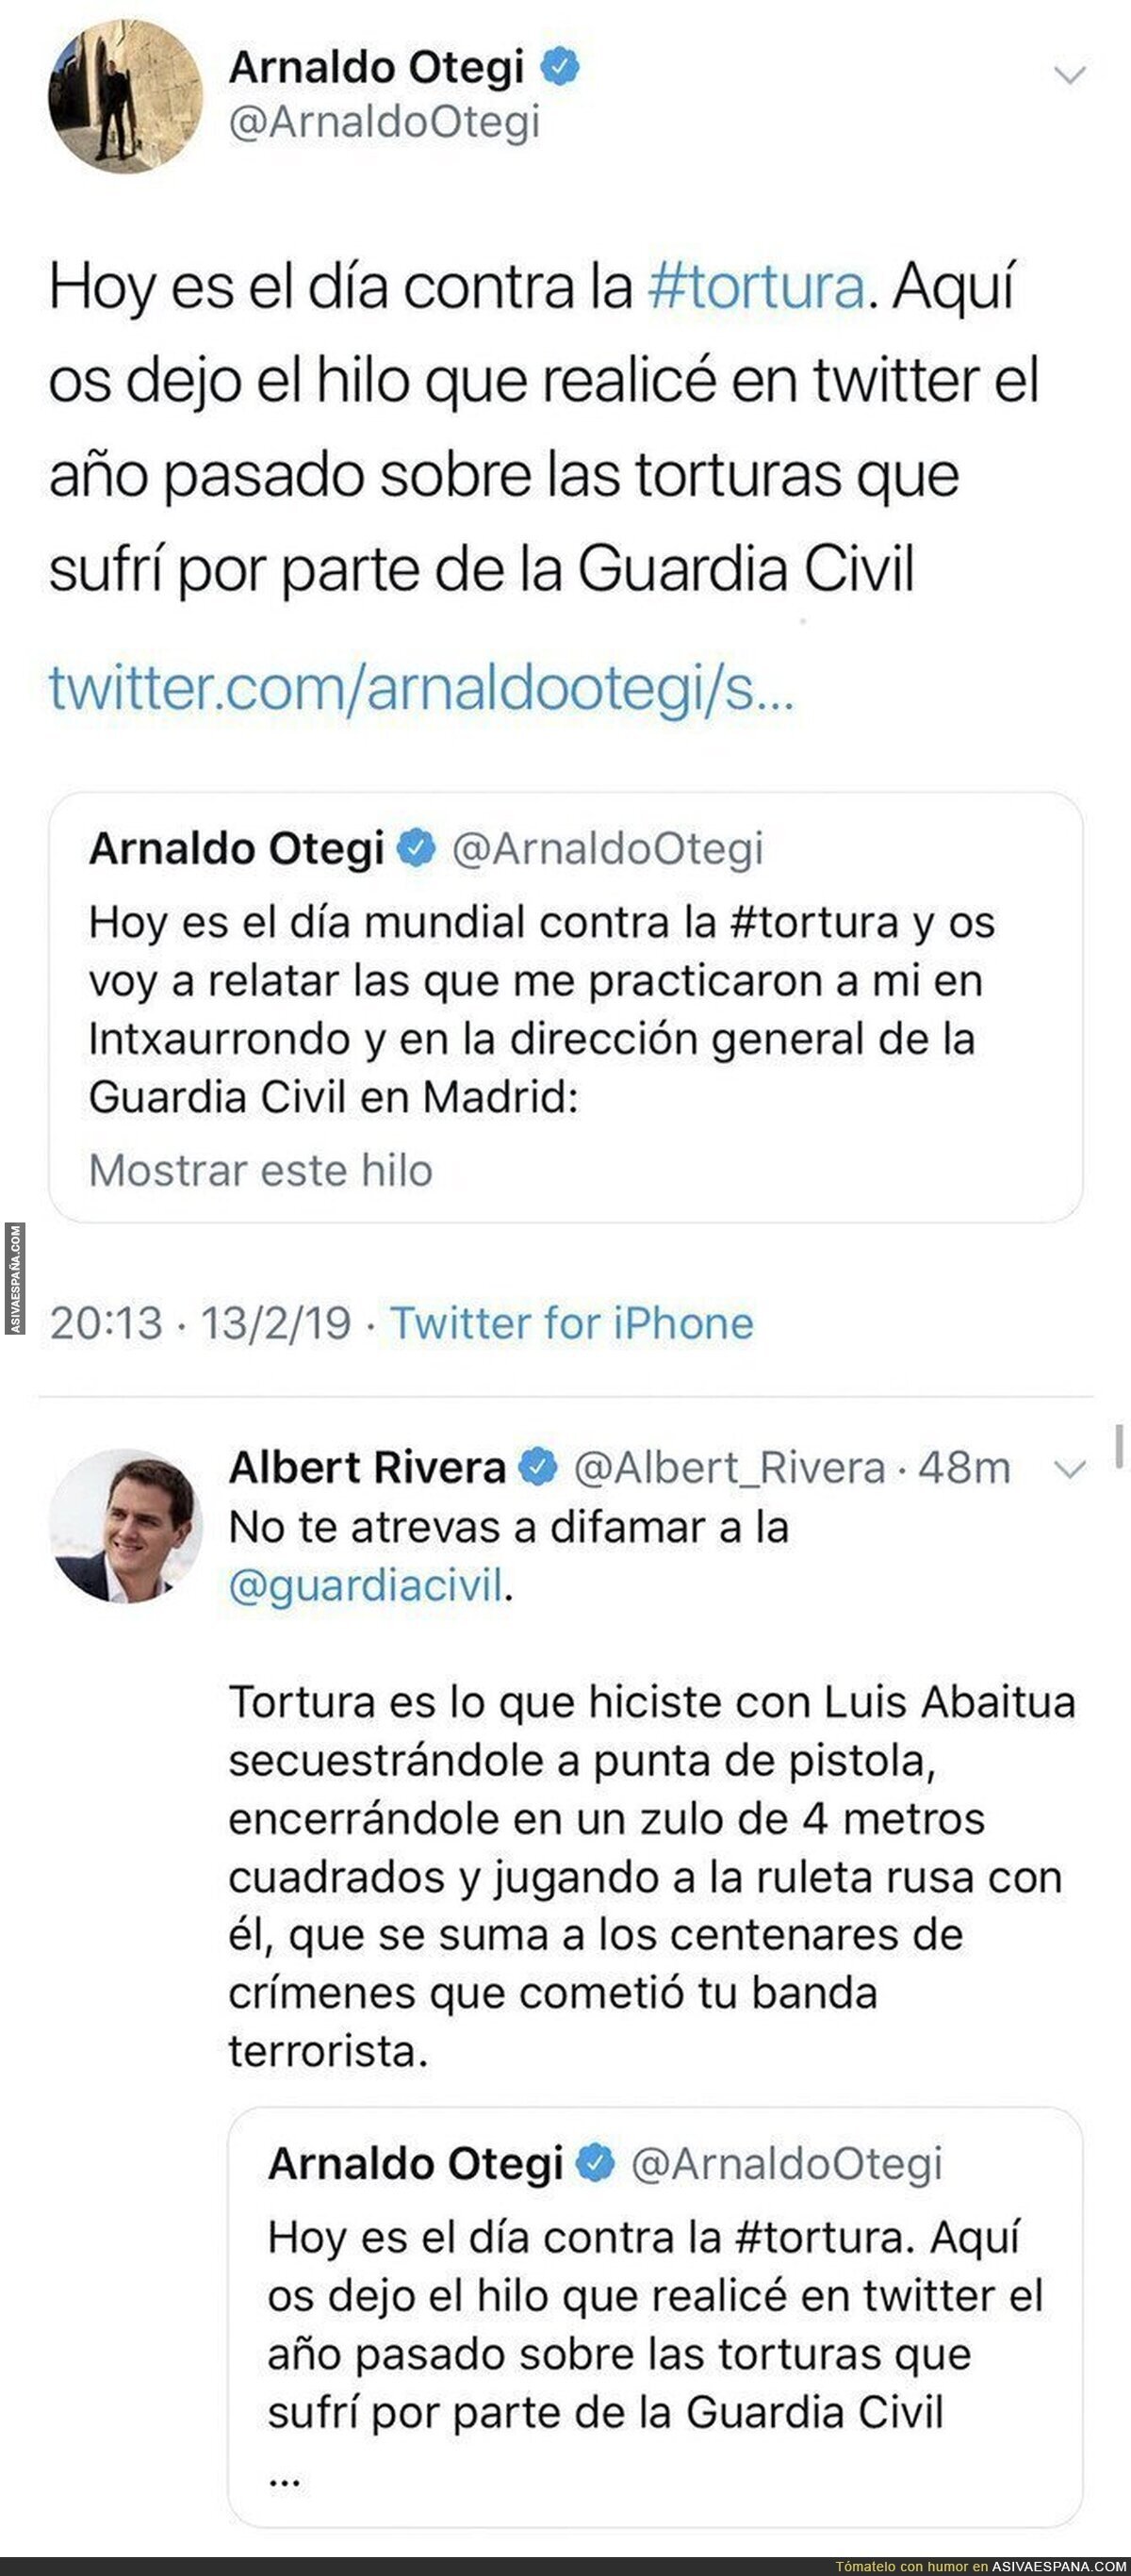 Albert Rivera carga contra Arnaldo Otegi por hablar sobre 'el día de la tortura'